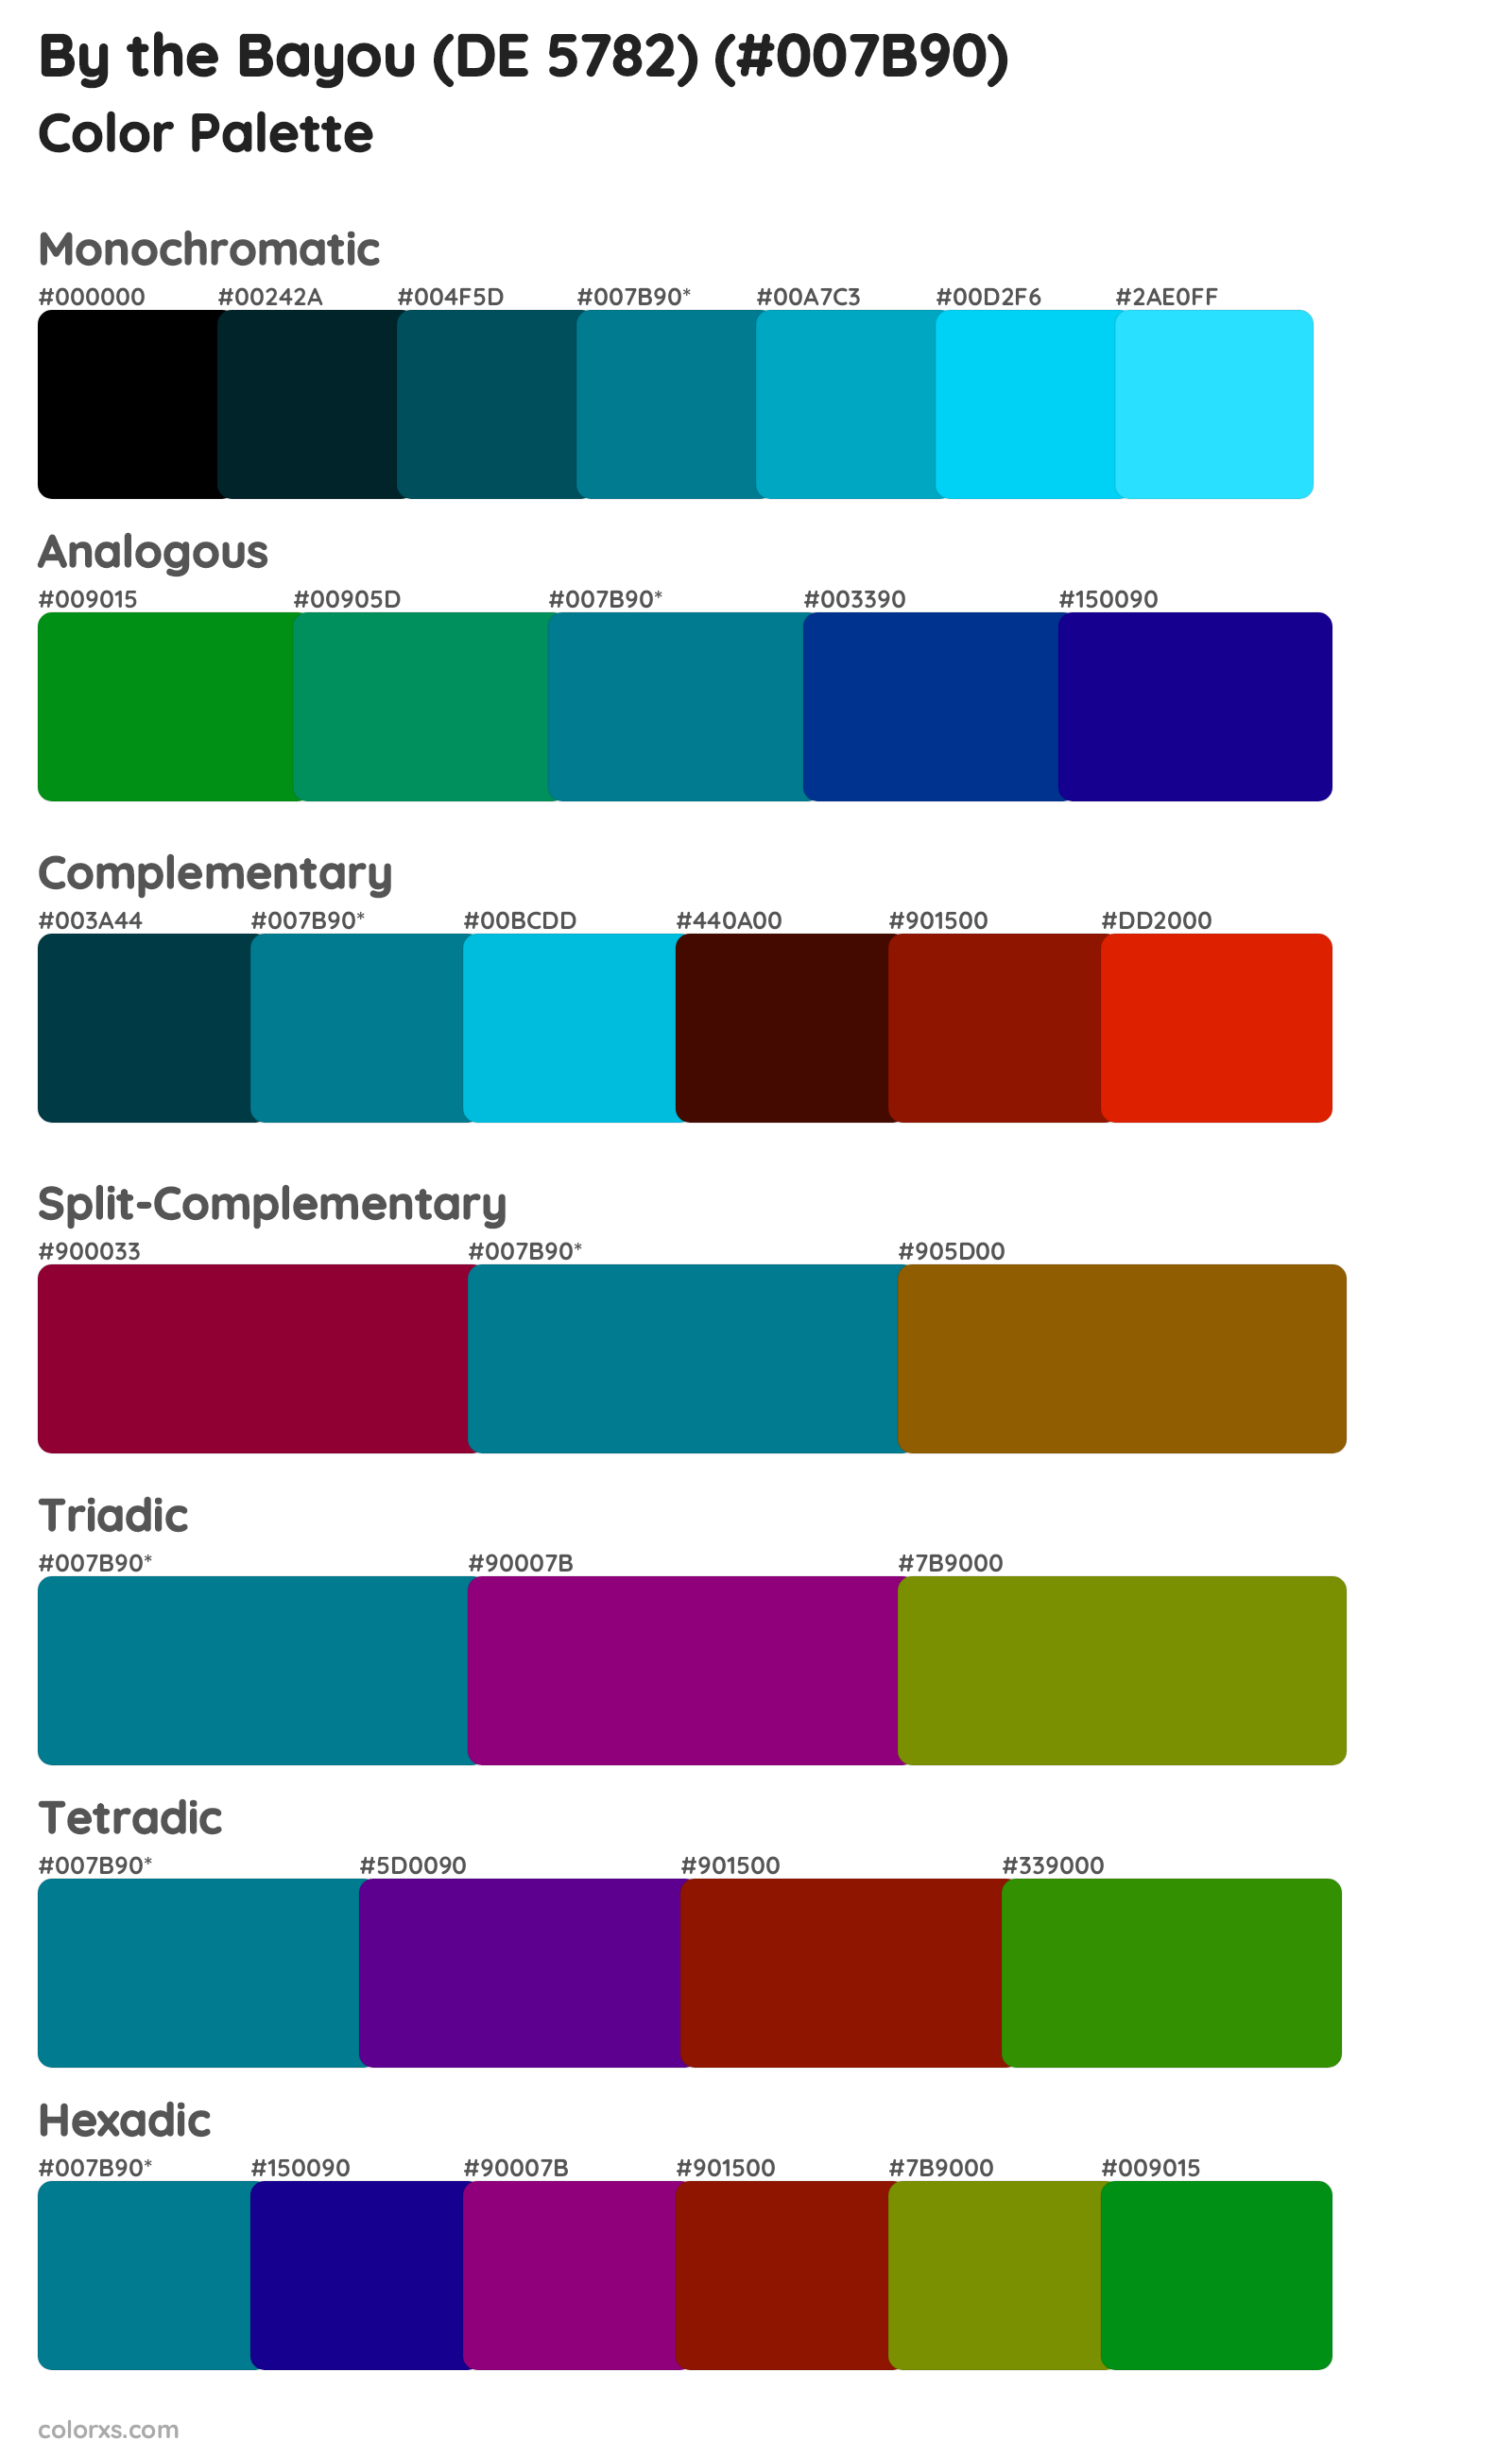 By the Bayou (DE 5782) Color Scheme Palettes